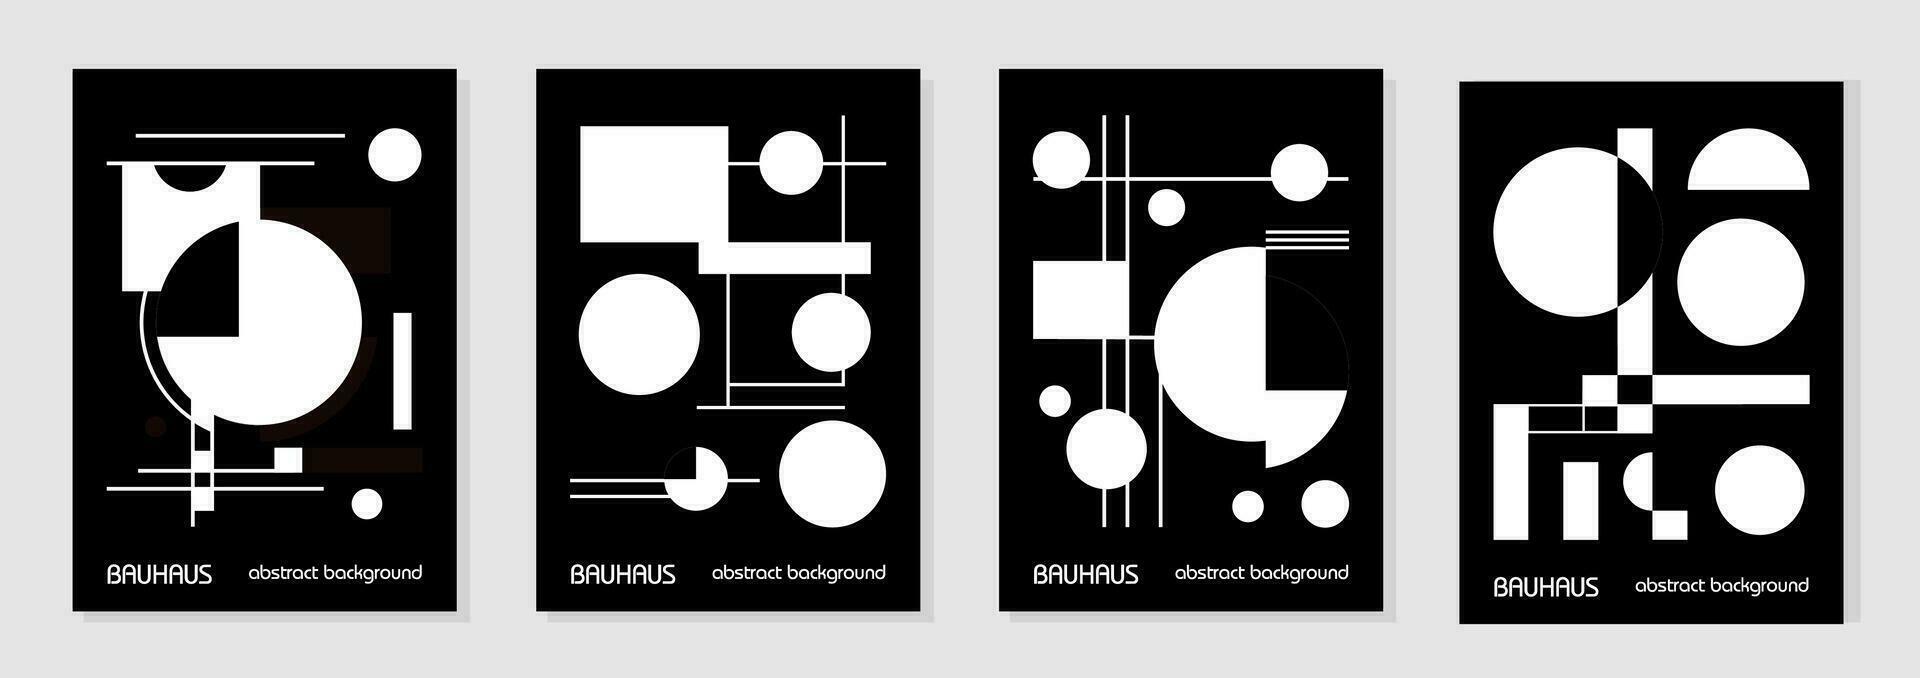 uppsättning av 4 minimal vintage 20-tal geometriska design affischer, väggkonst, mall, layout med primitiva former element. bauhaus retro mönster bakgrund, vektor abstrakt cirkel, triangel och kvadratisk linjekonst